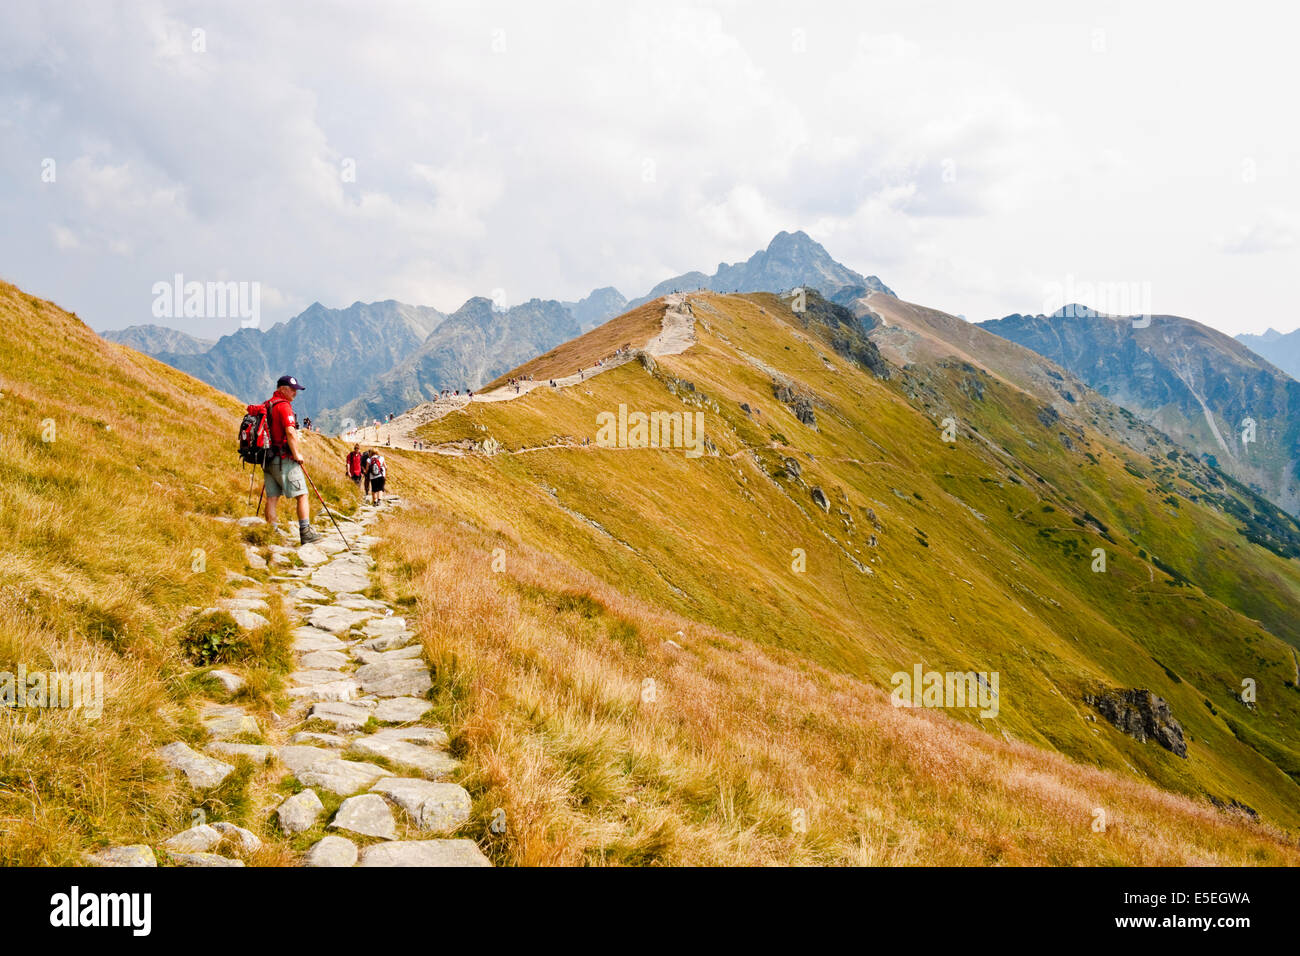 KASPROWY WIERCH, Polonia - 3 settembre: un uomo dotato di escursionismo in piedi sul percorso a piedi nei monti Tatra il 3 settembre Foto Stock